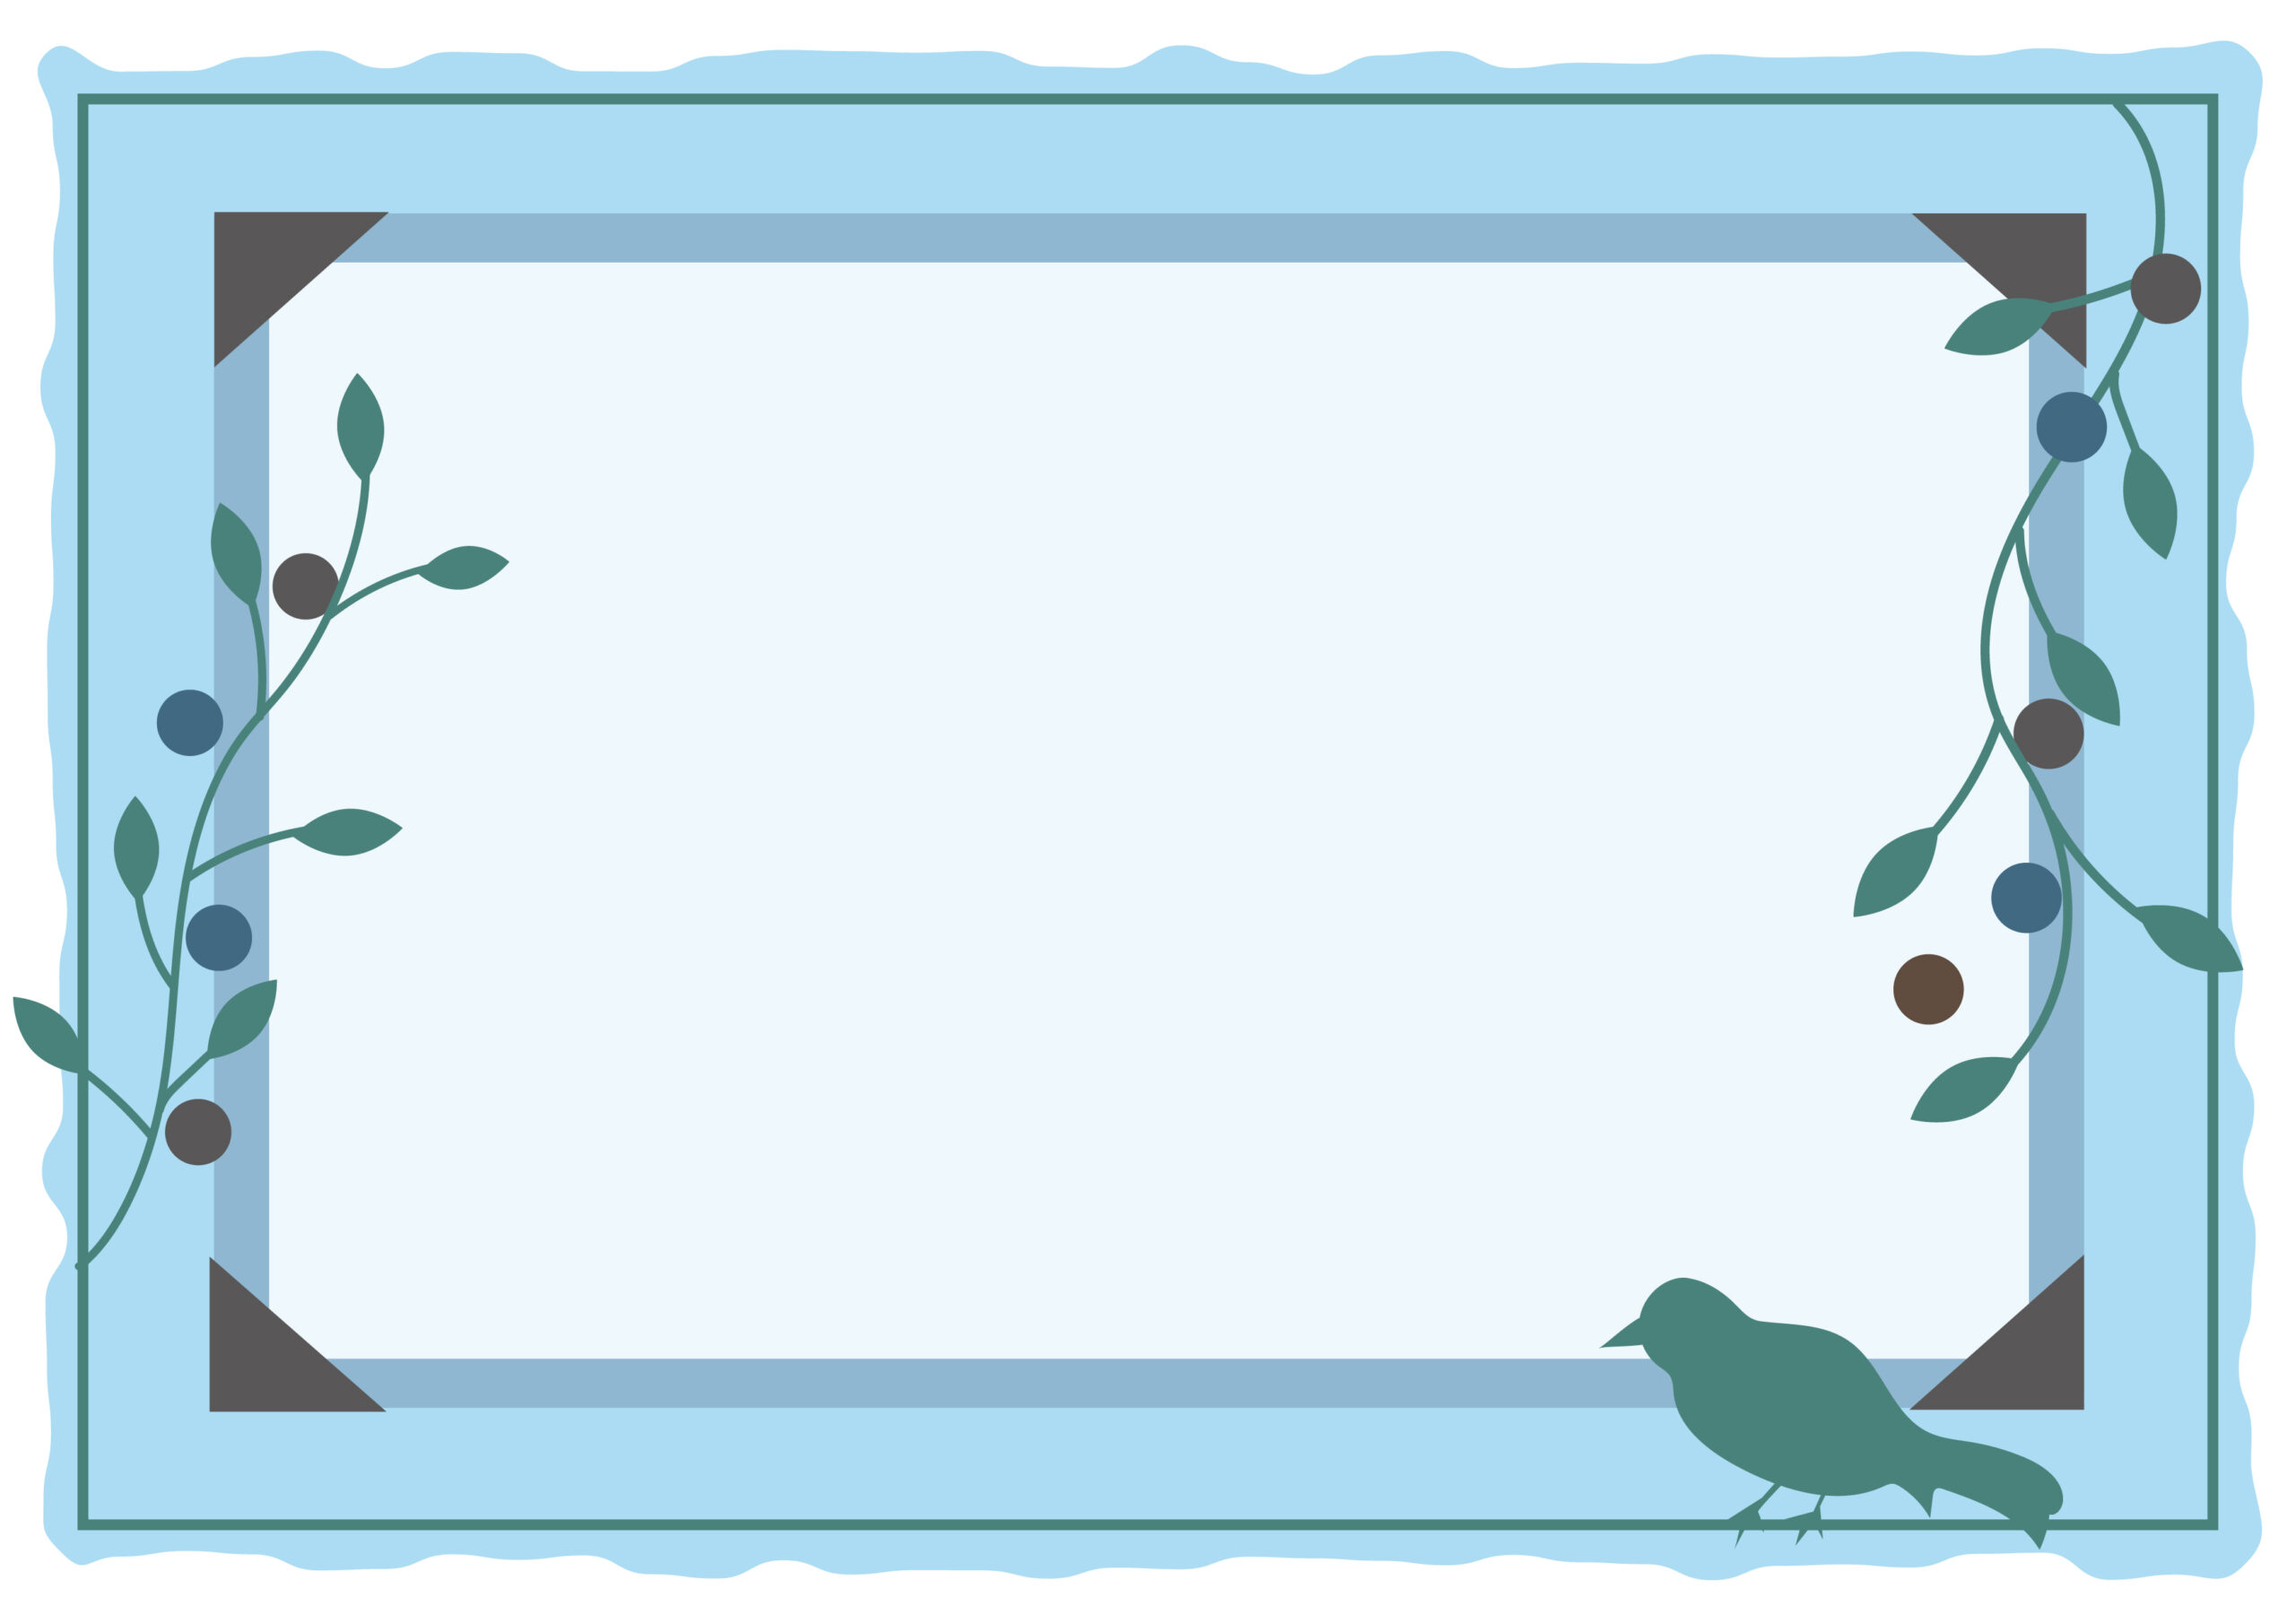 梅雨の季節のメッセージカードや臨時休業のお知らせの張り紙、季節メニューのご案内のデザインにおすすめする鳥と植物のイラストが描かれたおしゃれなフレーム素材になります。写真などを挿入し、飾り枠としてご使用いただく事も可能です。ダウンロー